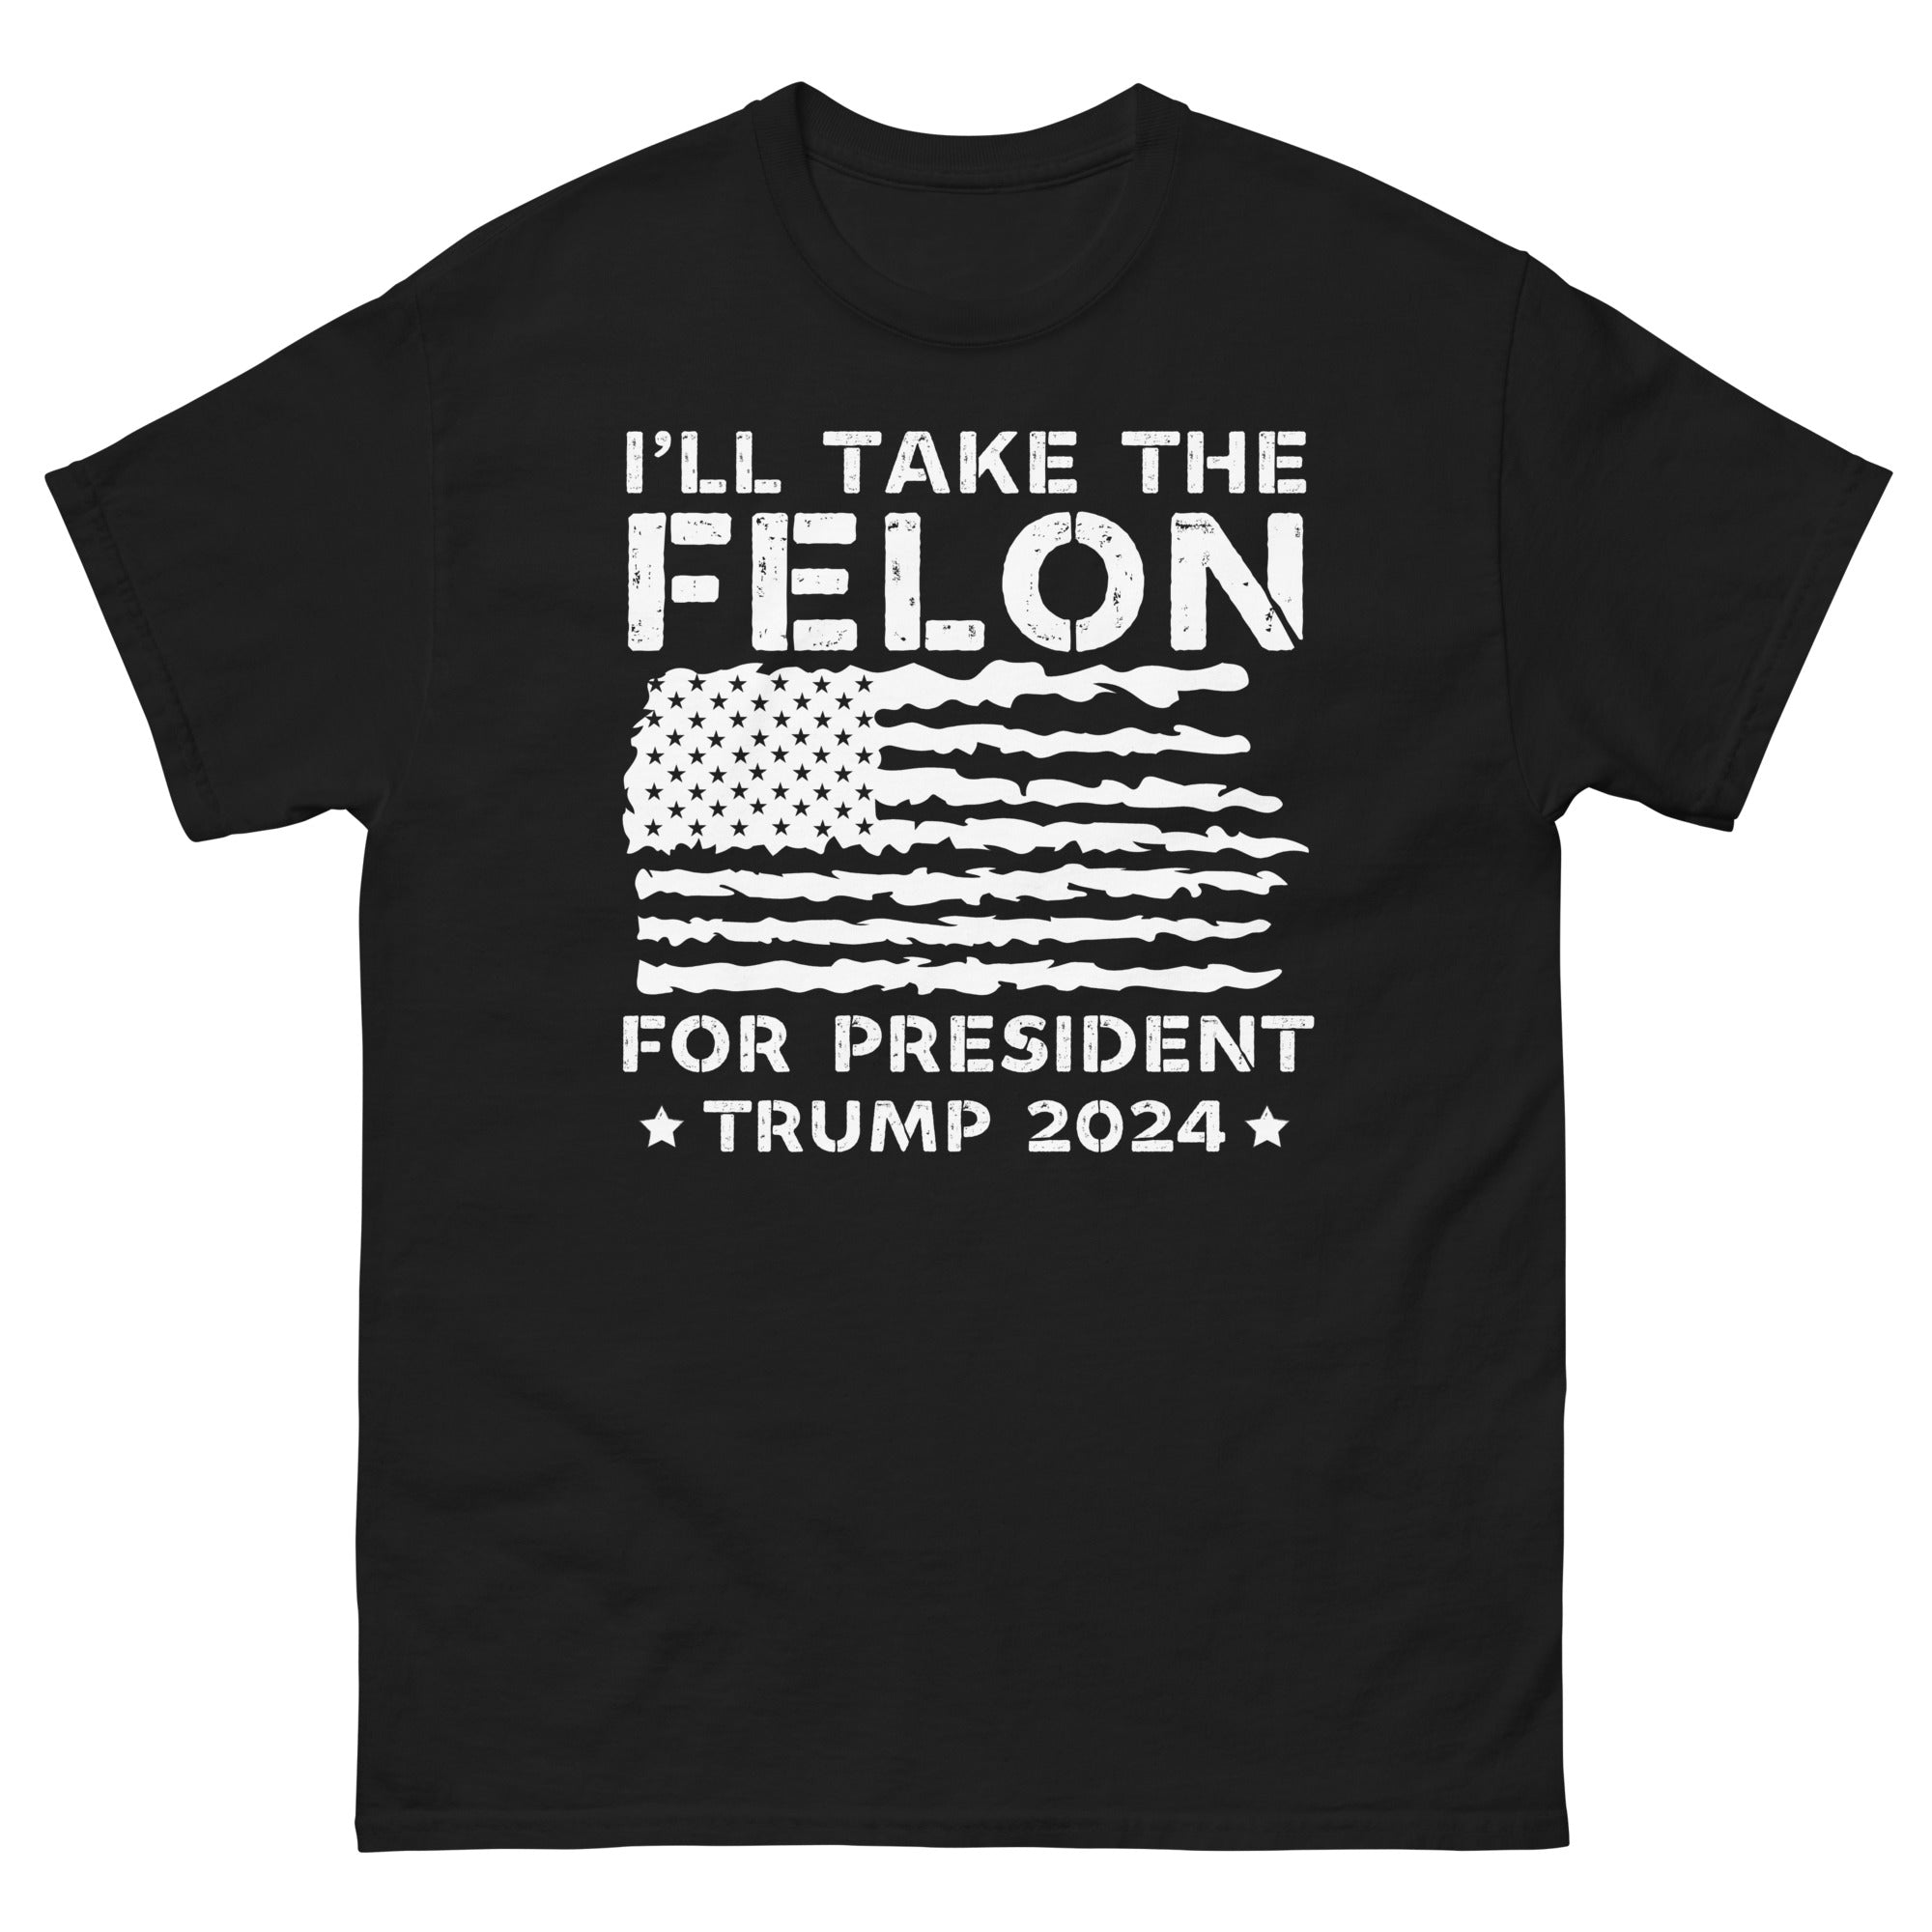 Wählen Sie einen Schwerverbrecher 2024, verurteilter Präsident, Trump 2024 Shirt, Republikaner Geschenke, Wahlshirt, Republikaner T-Shirt, Politisches T-Shirt, Lustiges T-Shirt